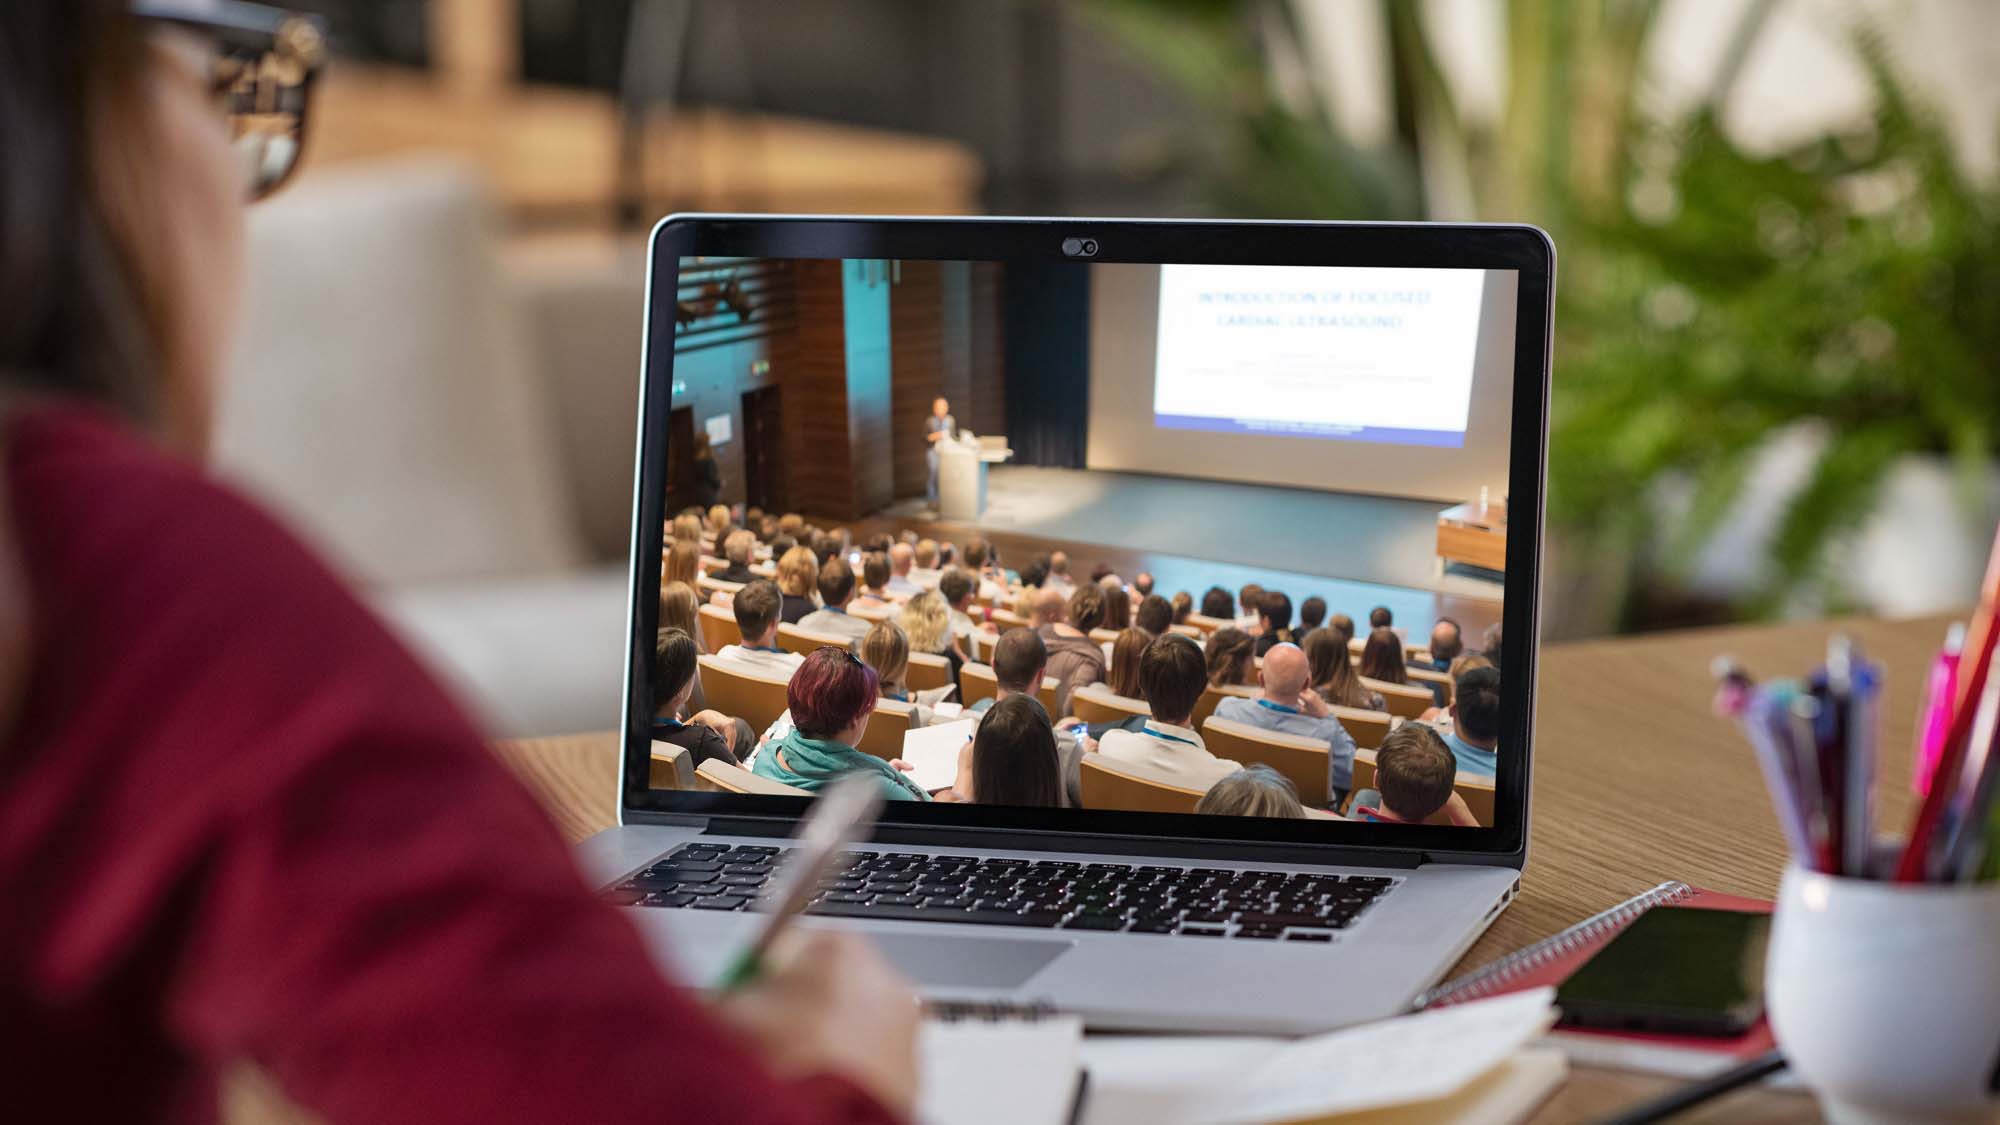 Ringvorlesung-Teaserbild: Person in rotem Pullover schaut auf Laptopbildschirm. Der Bildschirm zeigt einen vollbesetzten Vorlesungssaal.